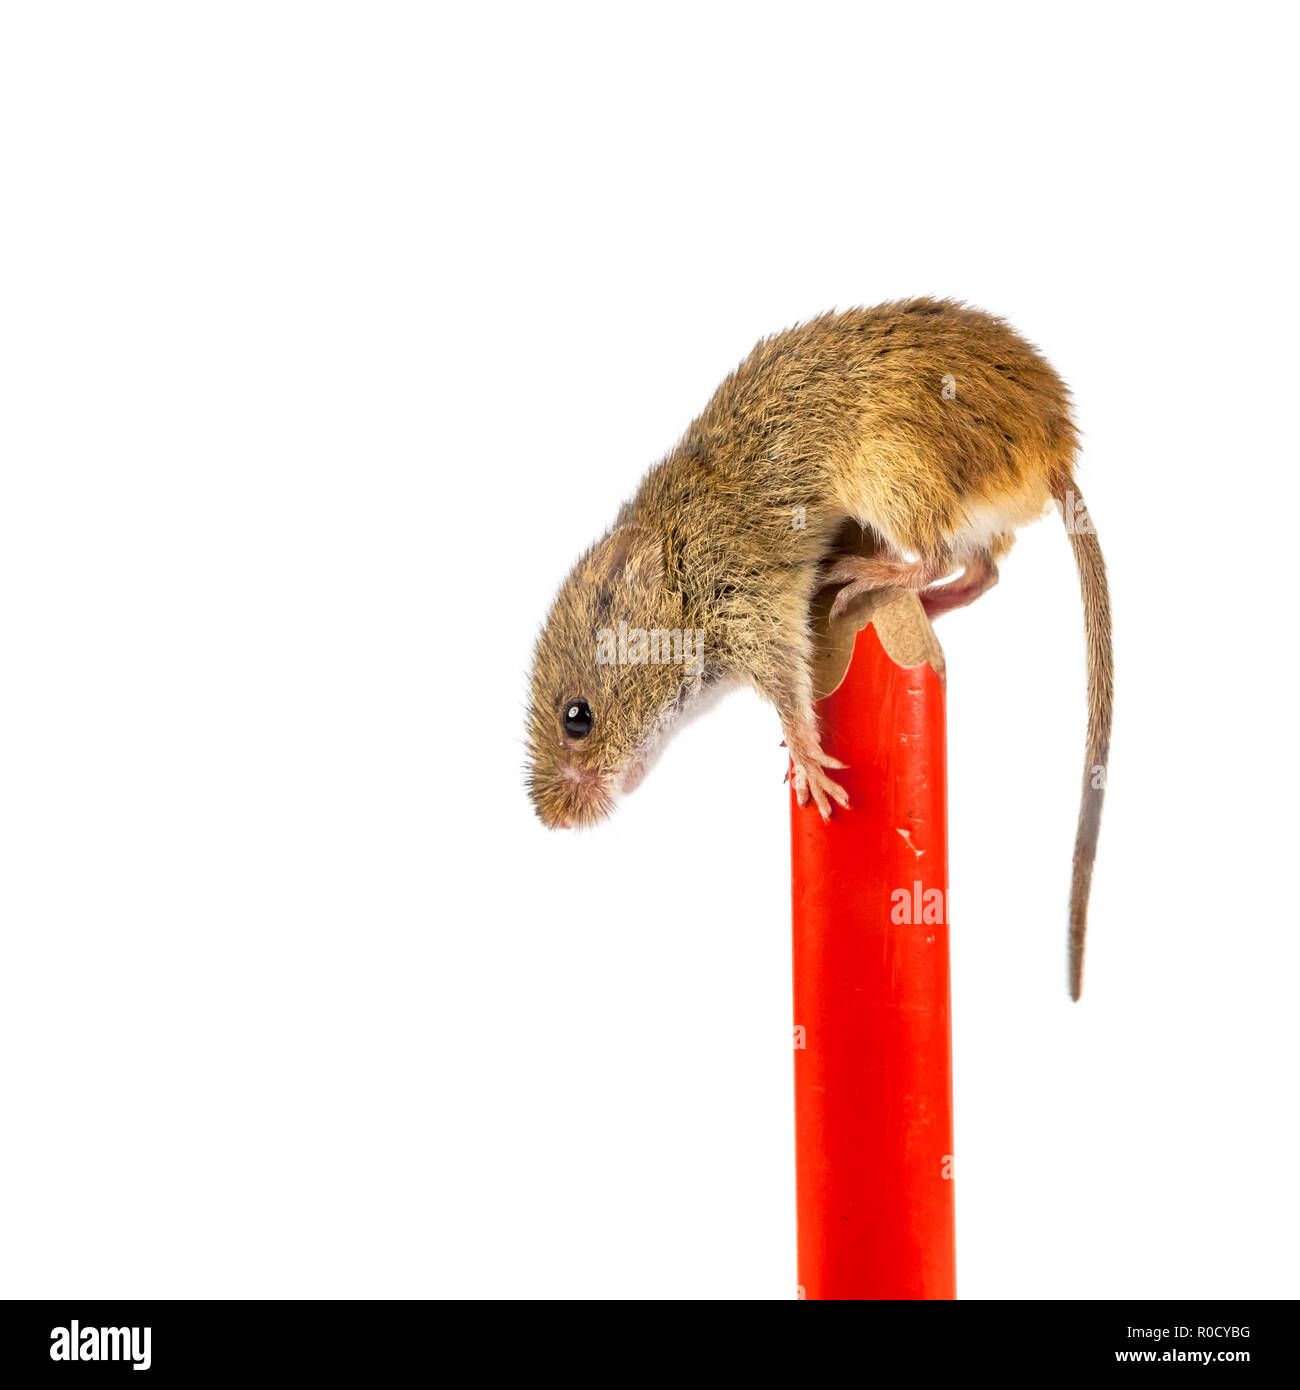 Penna con raccolto eurasiatica mouse (Micromys minutus) e percorso di clipping come un concetto per rinviare i compiti Foto Stock